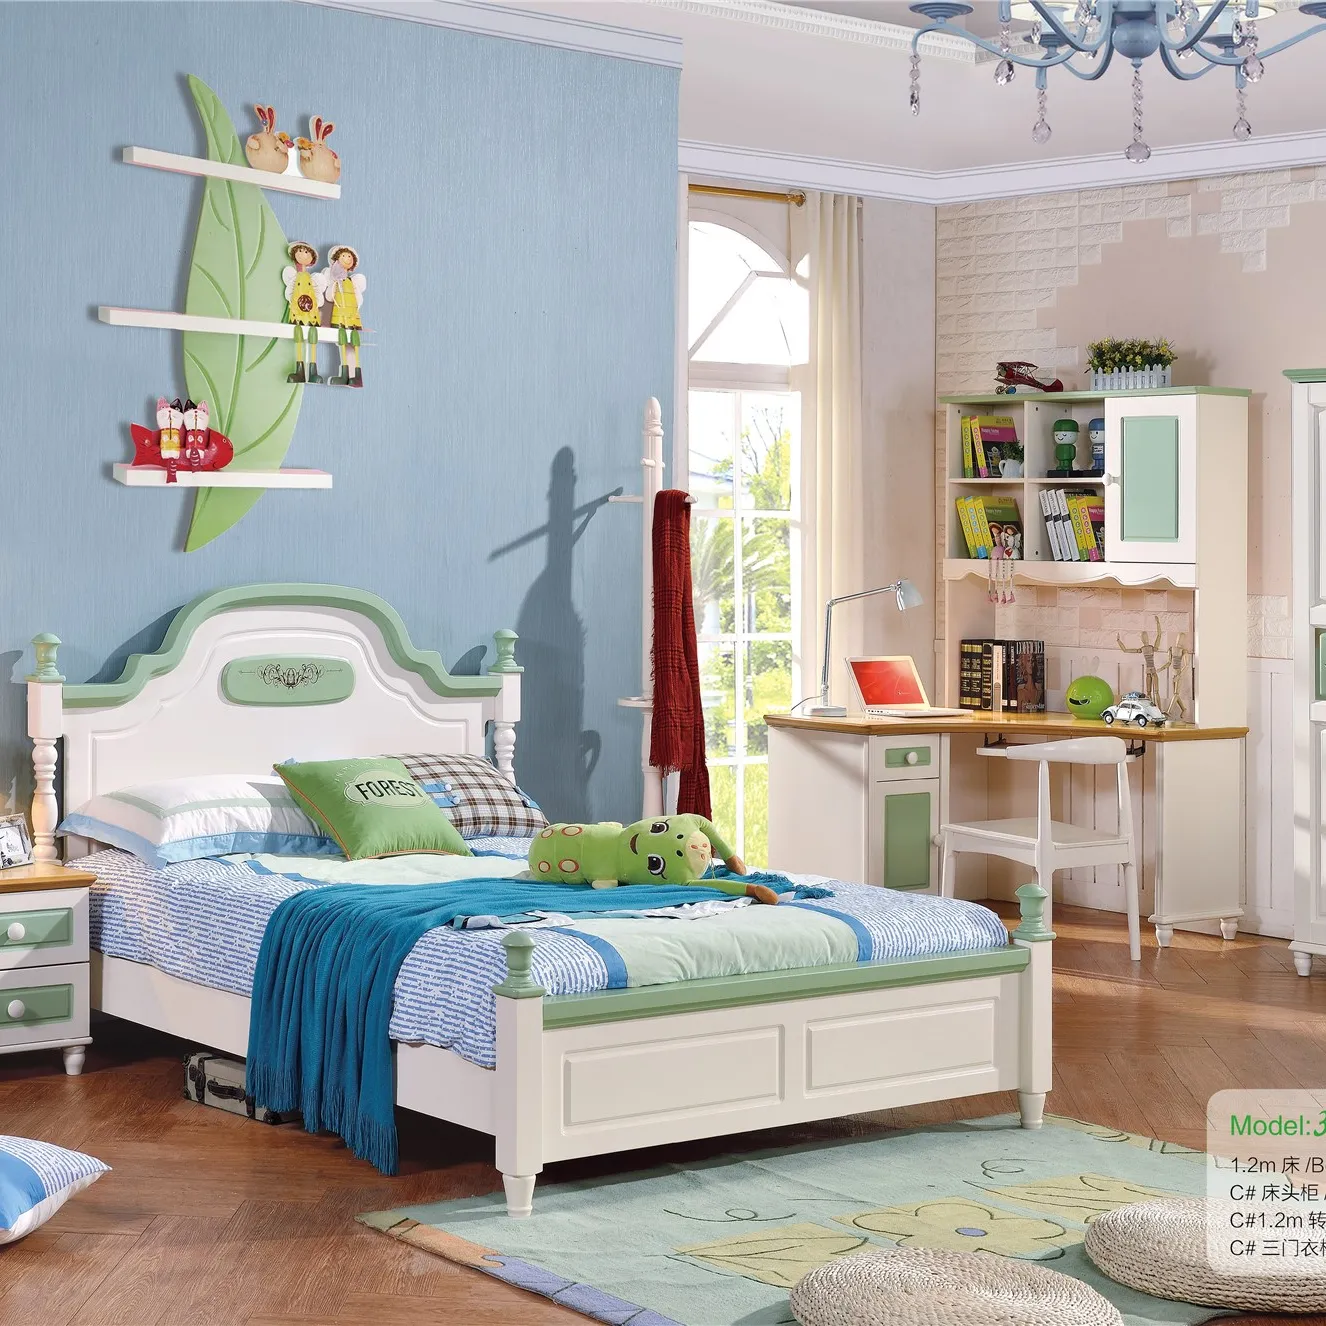 Çin toptan renkli çocuk yatak çocuklar yatak odası mobilyası